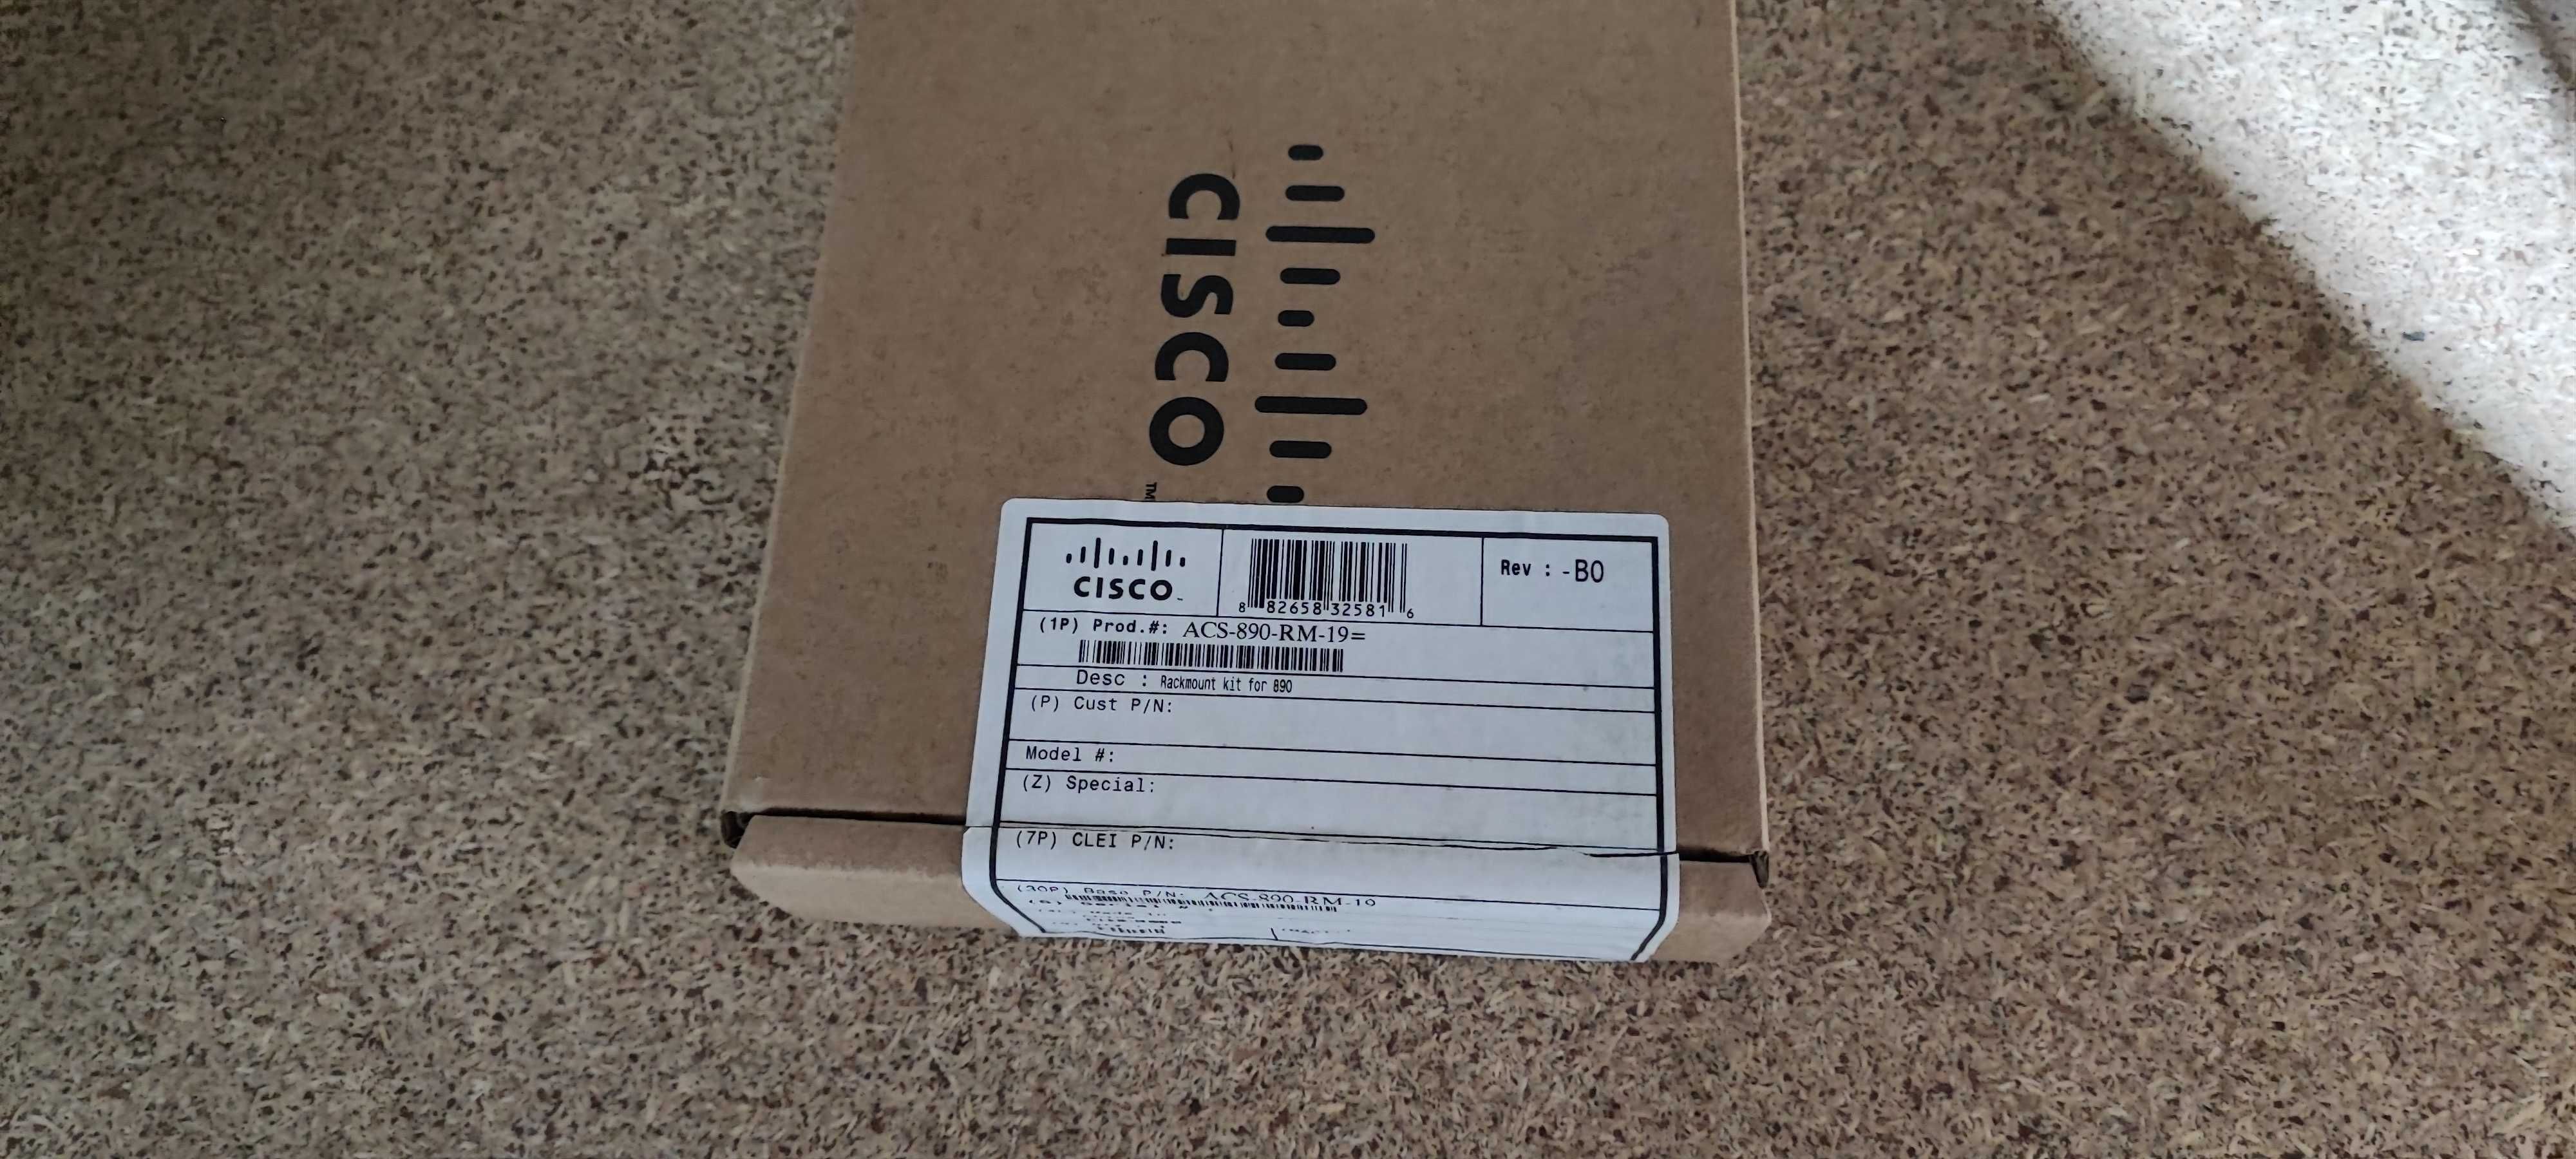 Монтажный комплект  Cisco ACS-890-RM-19=